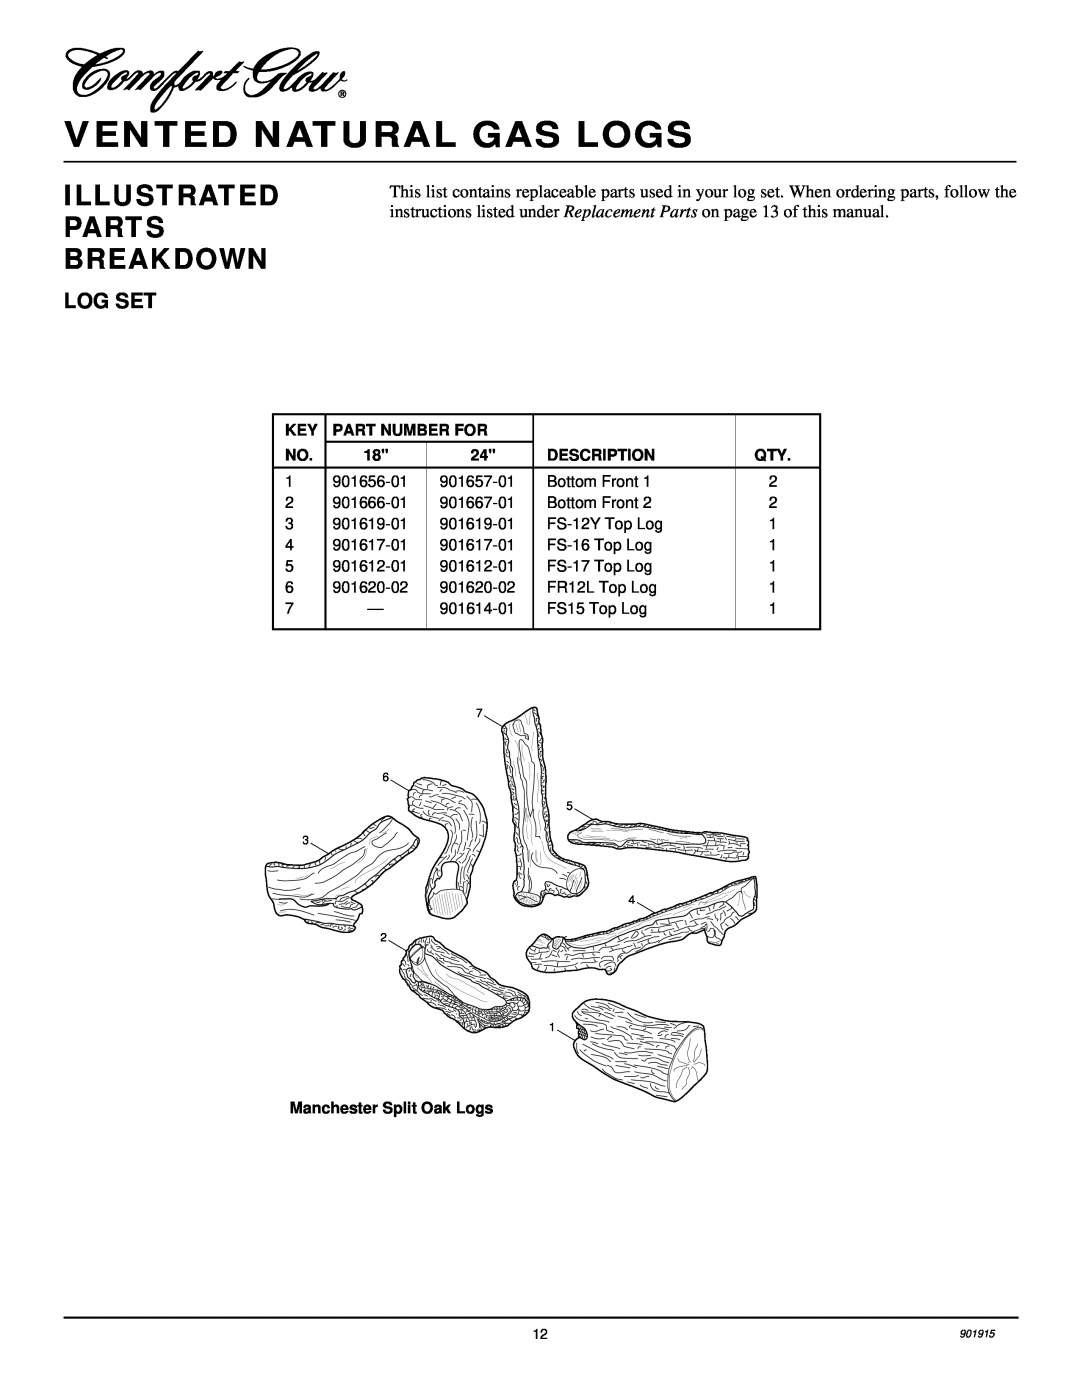 Desa HFVMR18 Vented Natural Gas Logs, Illustrated Parts Breakdown, Part Number For, Description, Manchester Split Oak Logs 